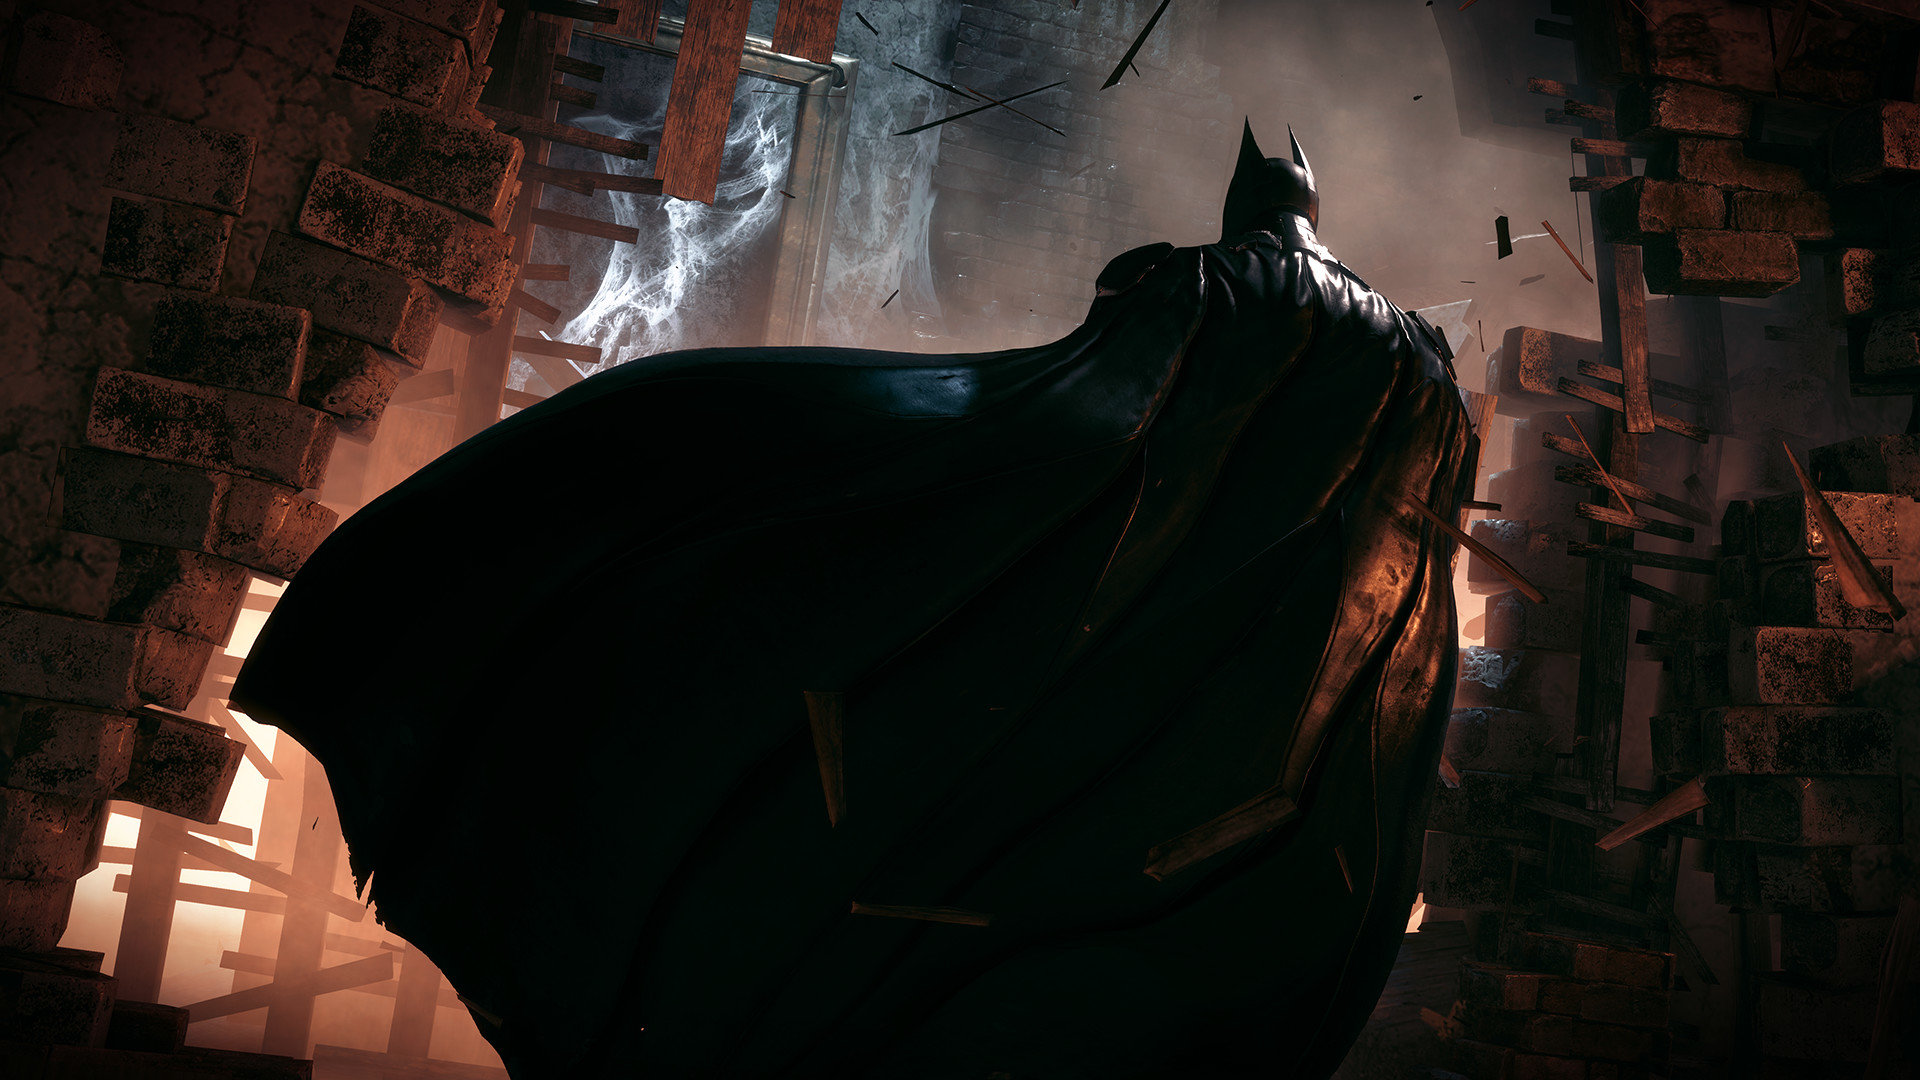 Download 1080p Batman - Batman Arkham Knight Artwork - HD Wallpaper 